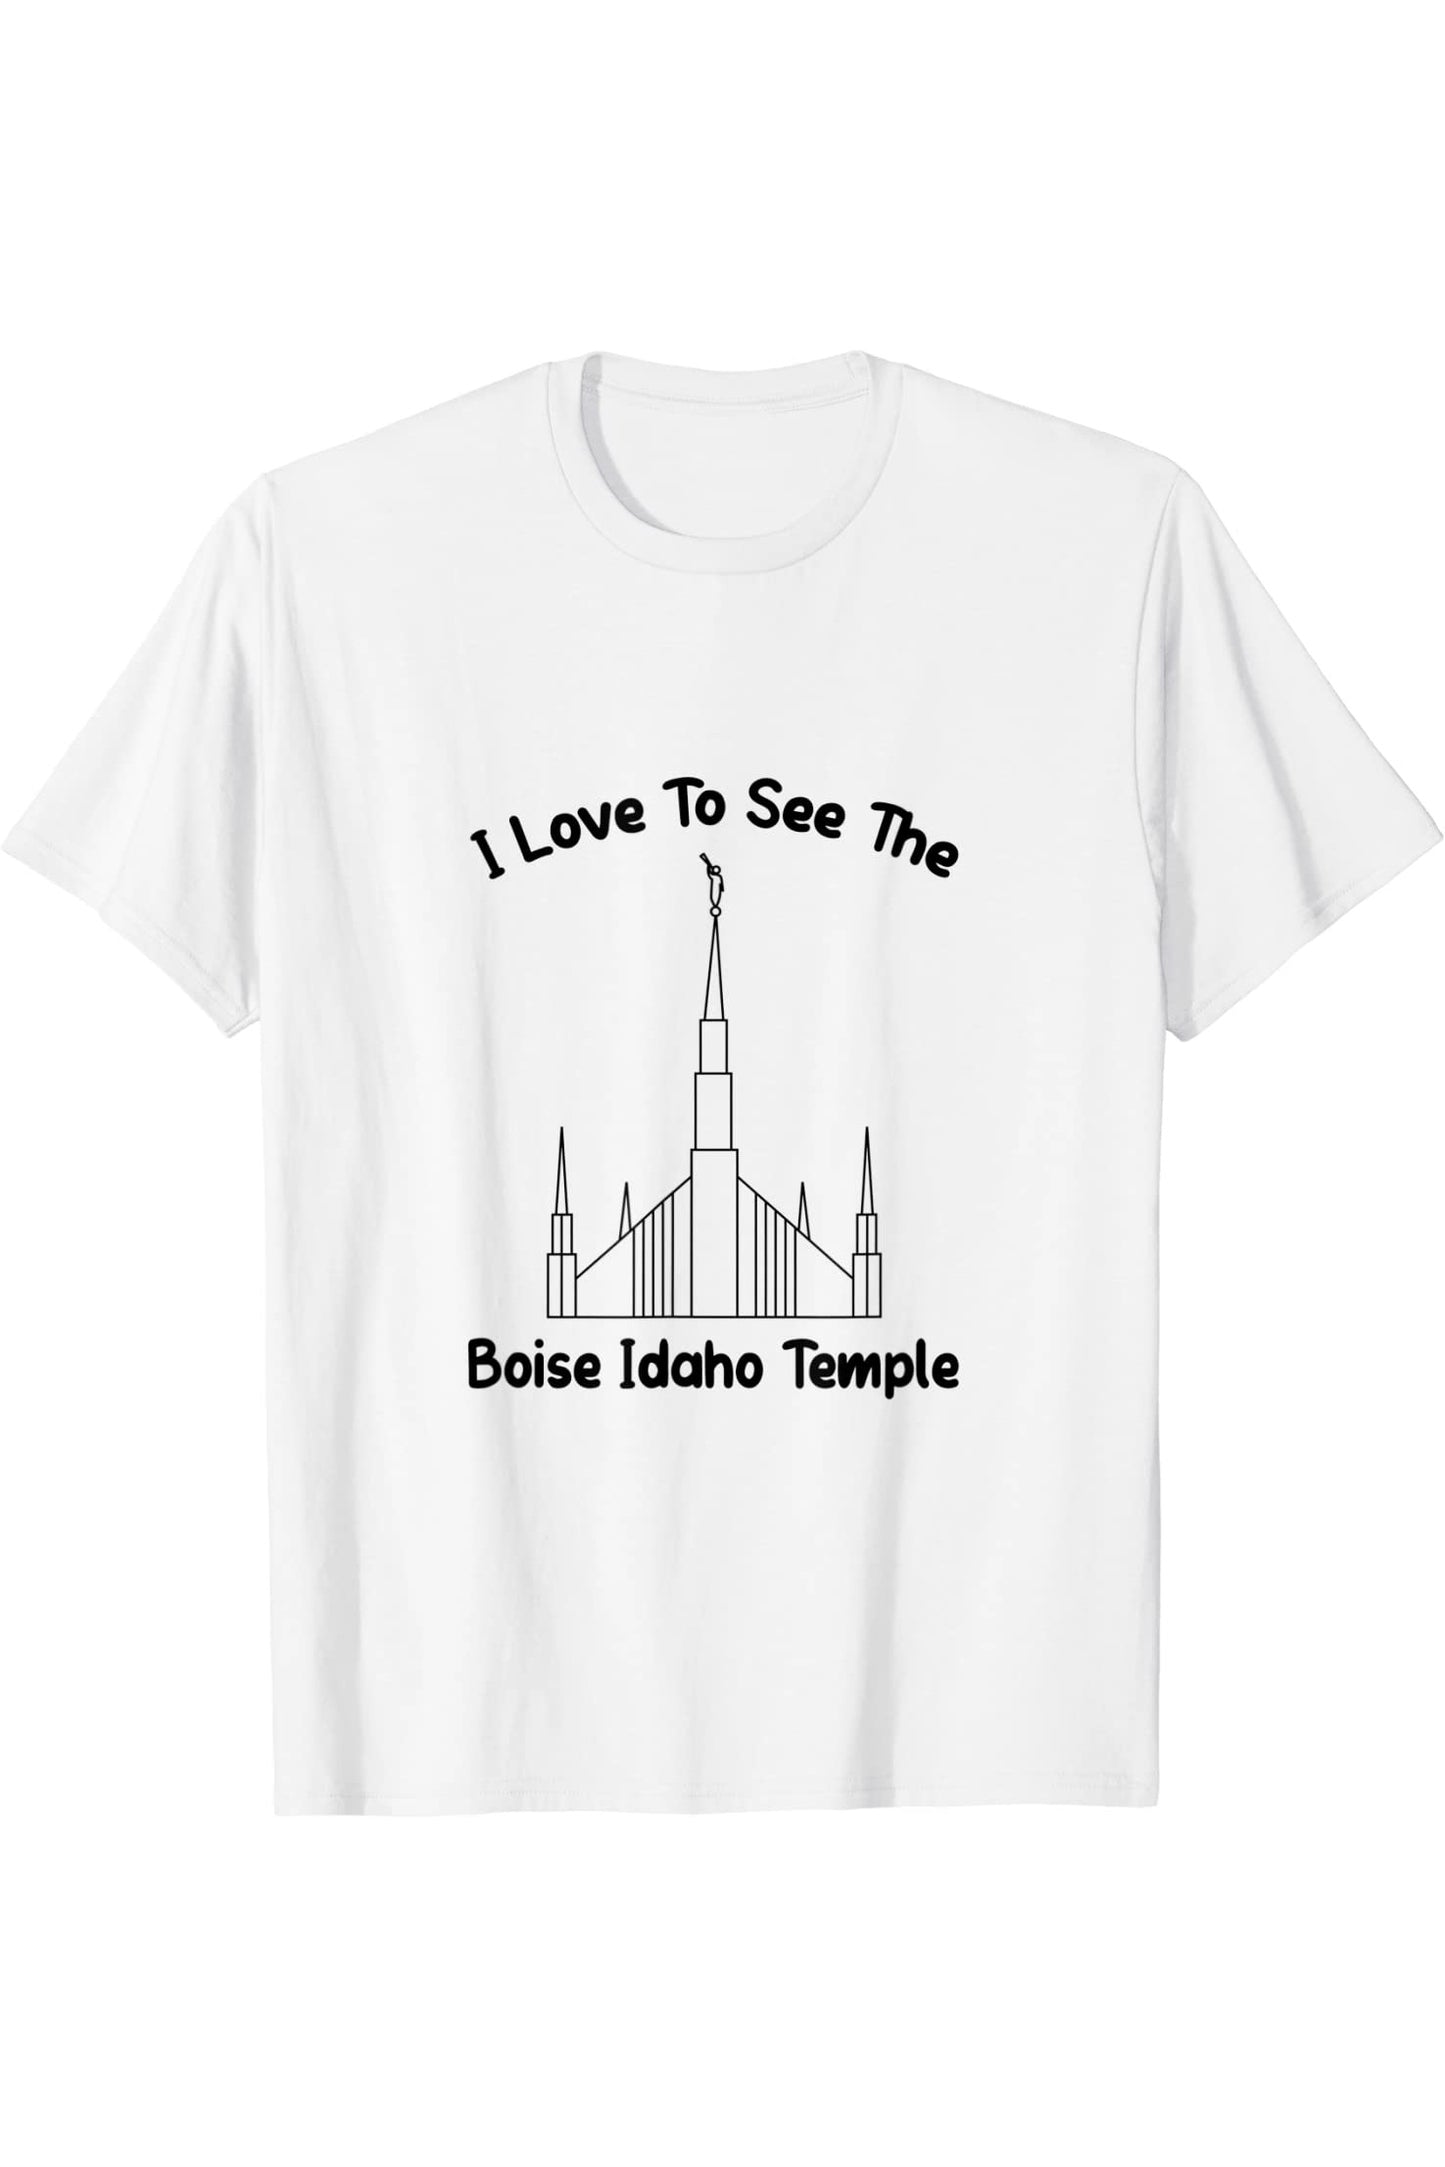 Boise Idaho Temple T-Shirt - Primary Style (English) US